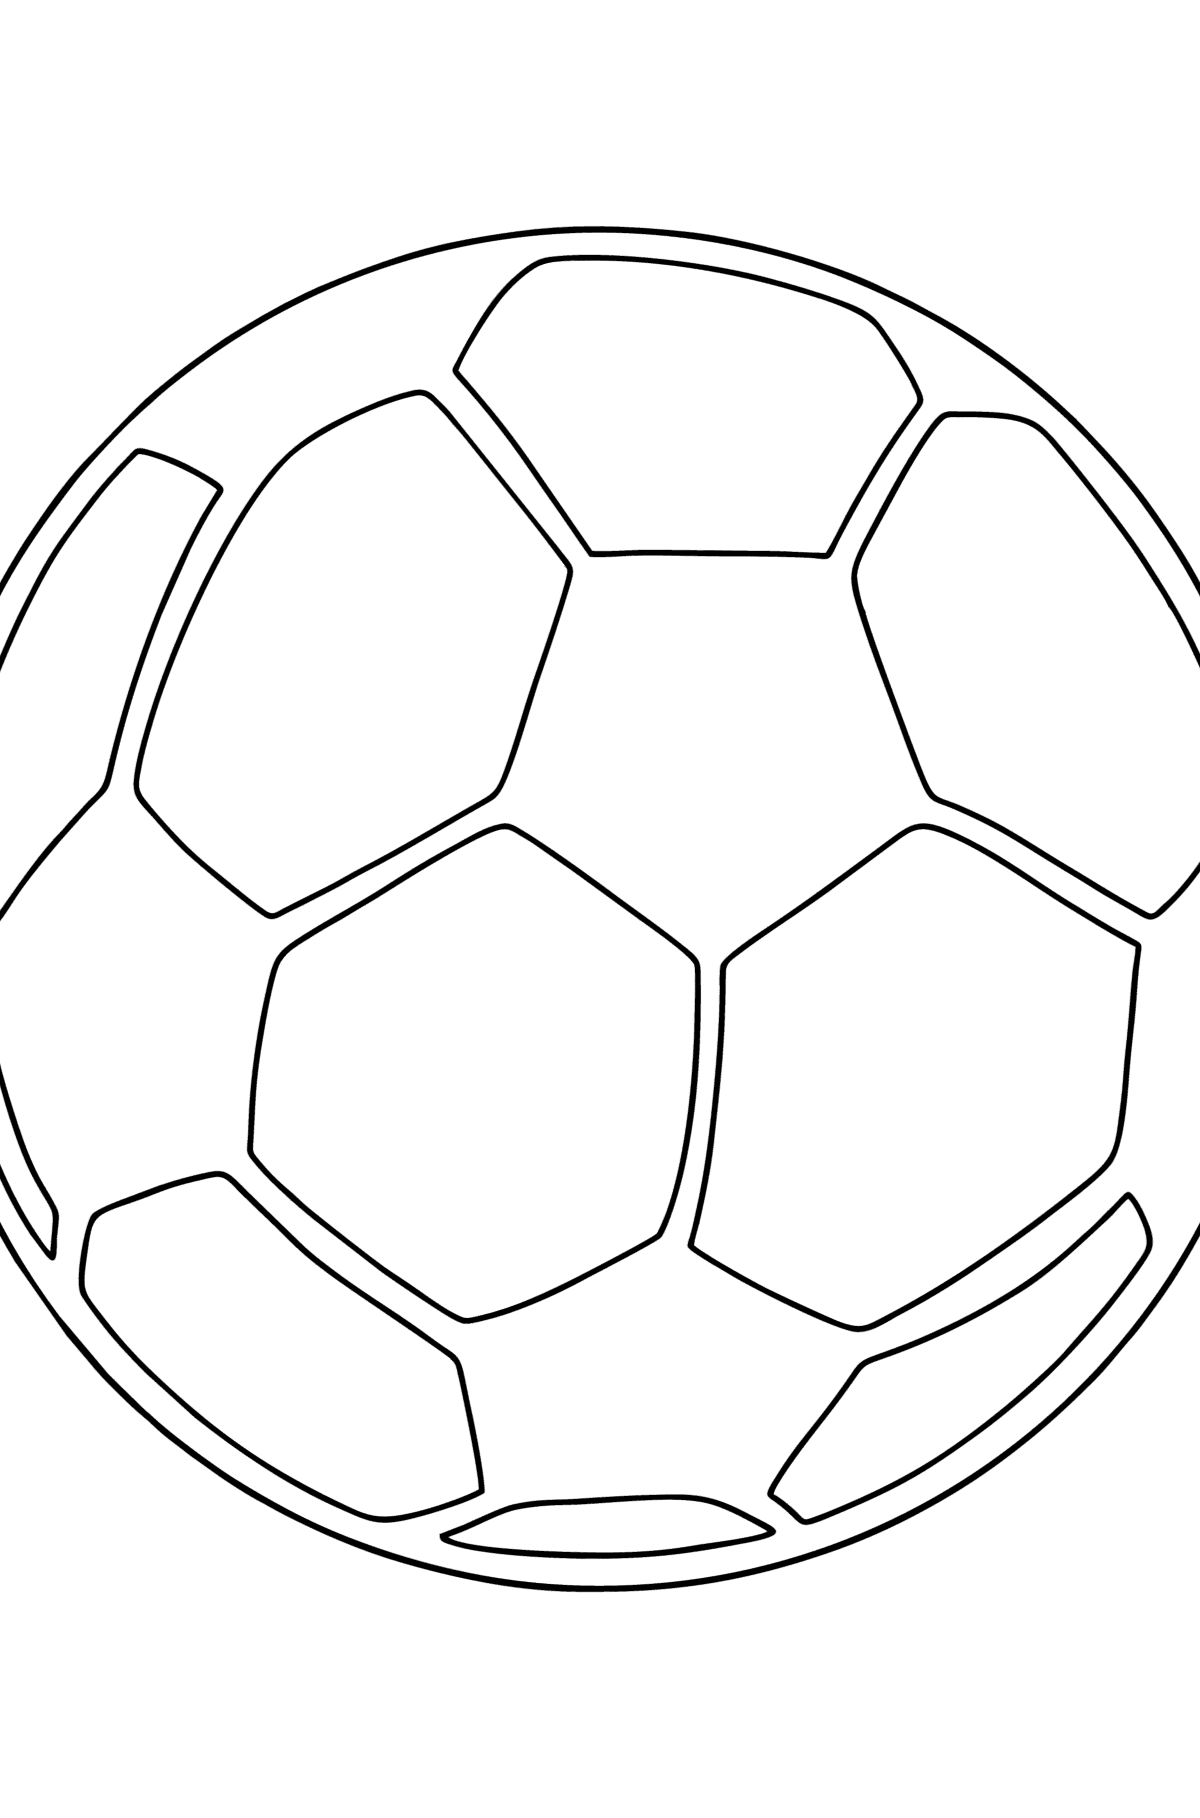 Tegning til fargelegging UEFA ball - Tegninger til fargelegging for barn